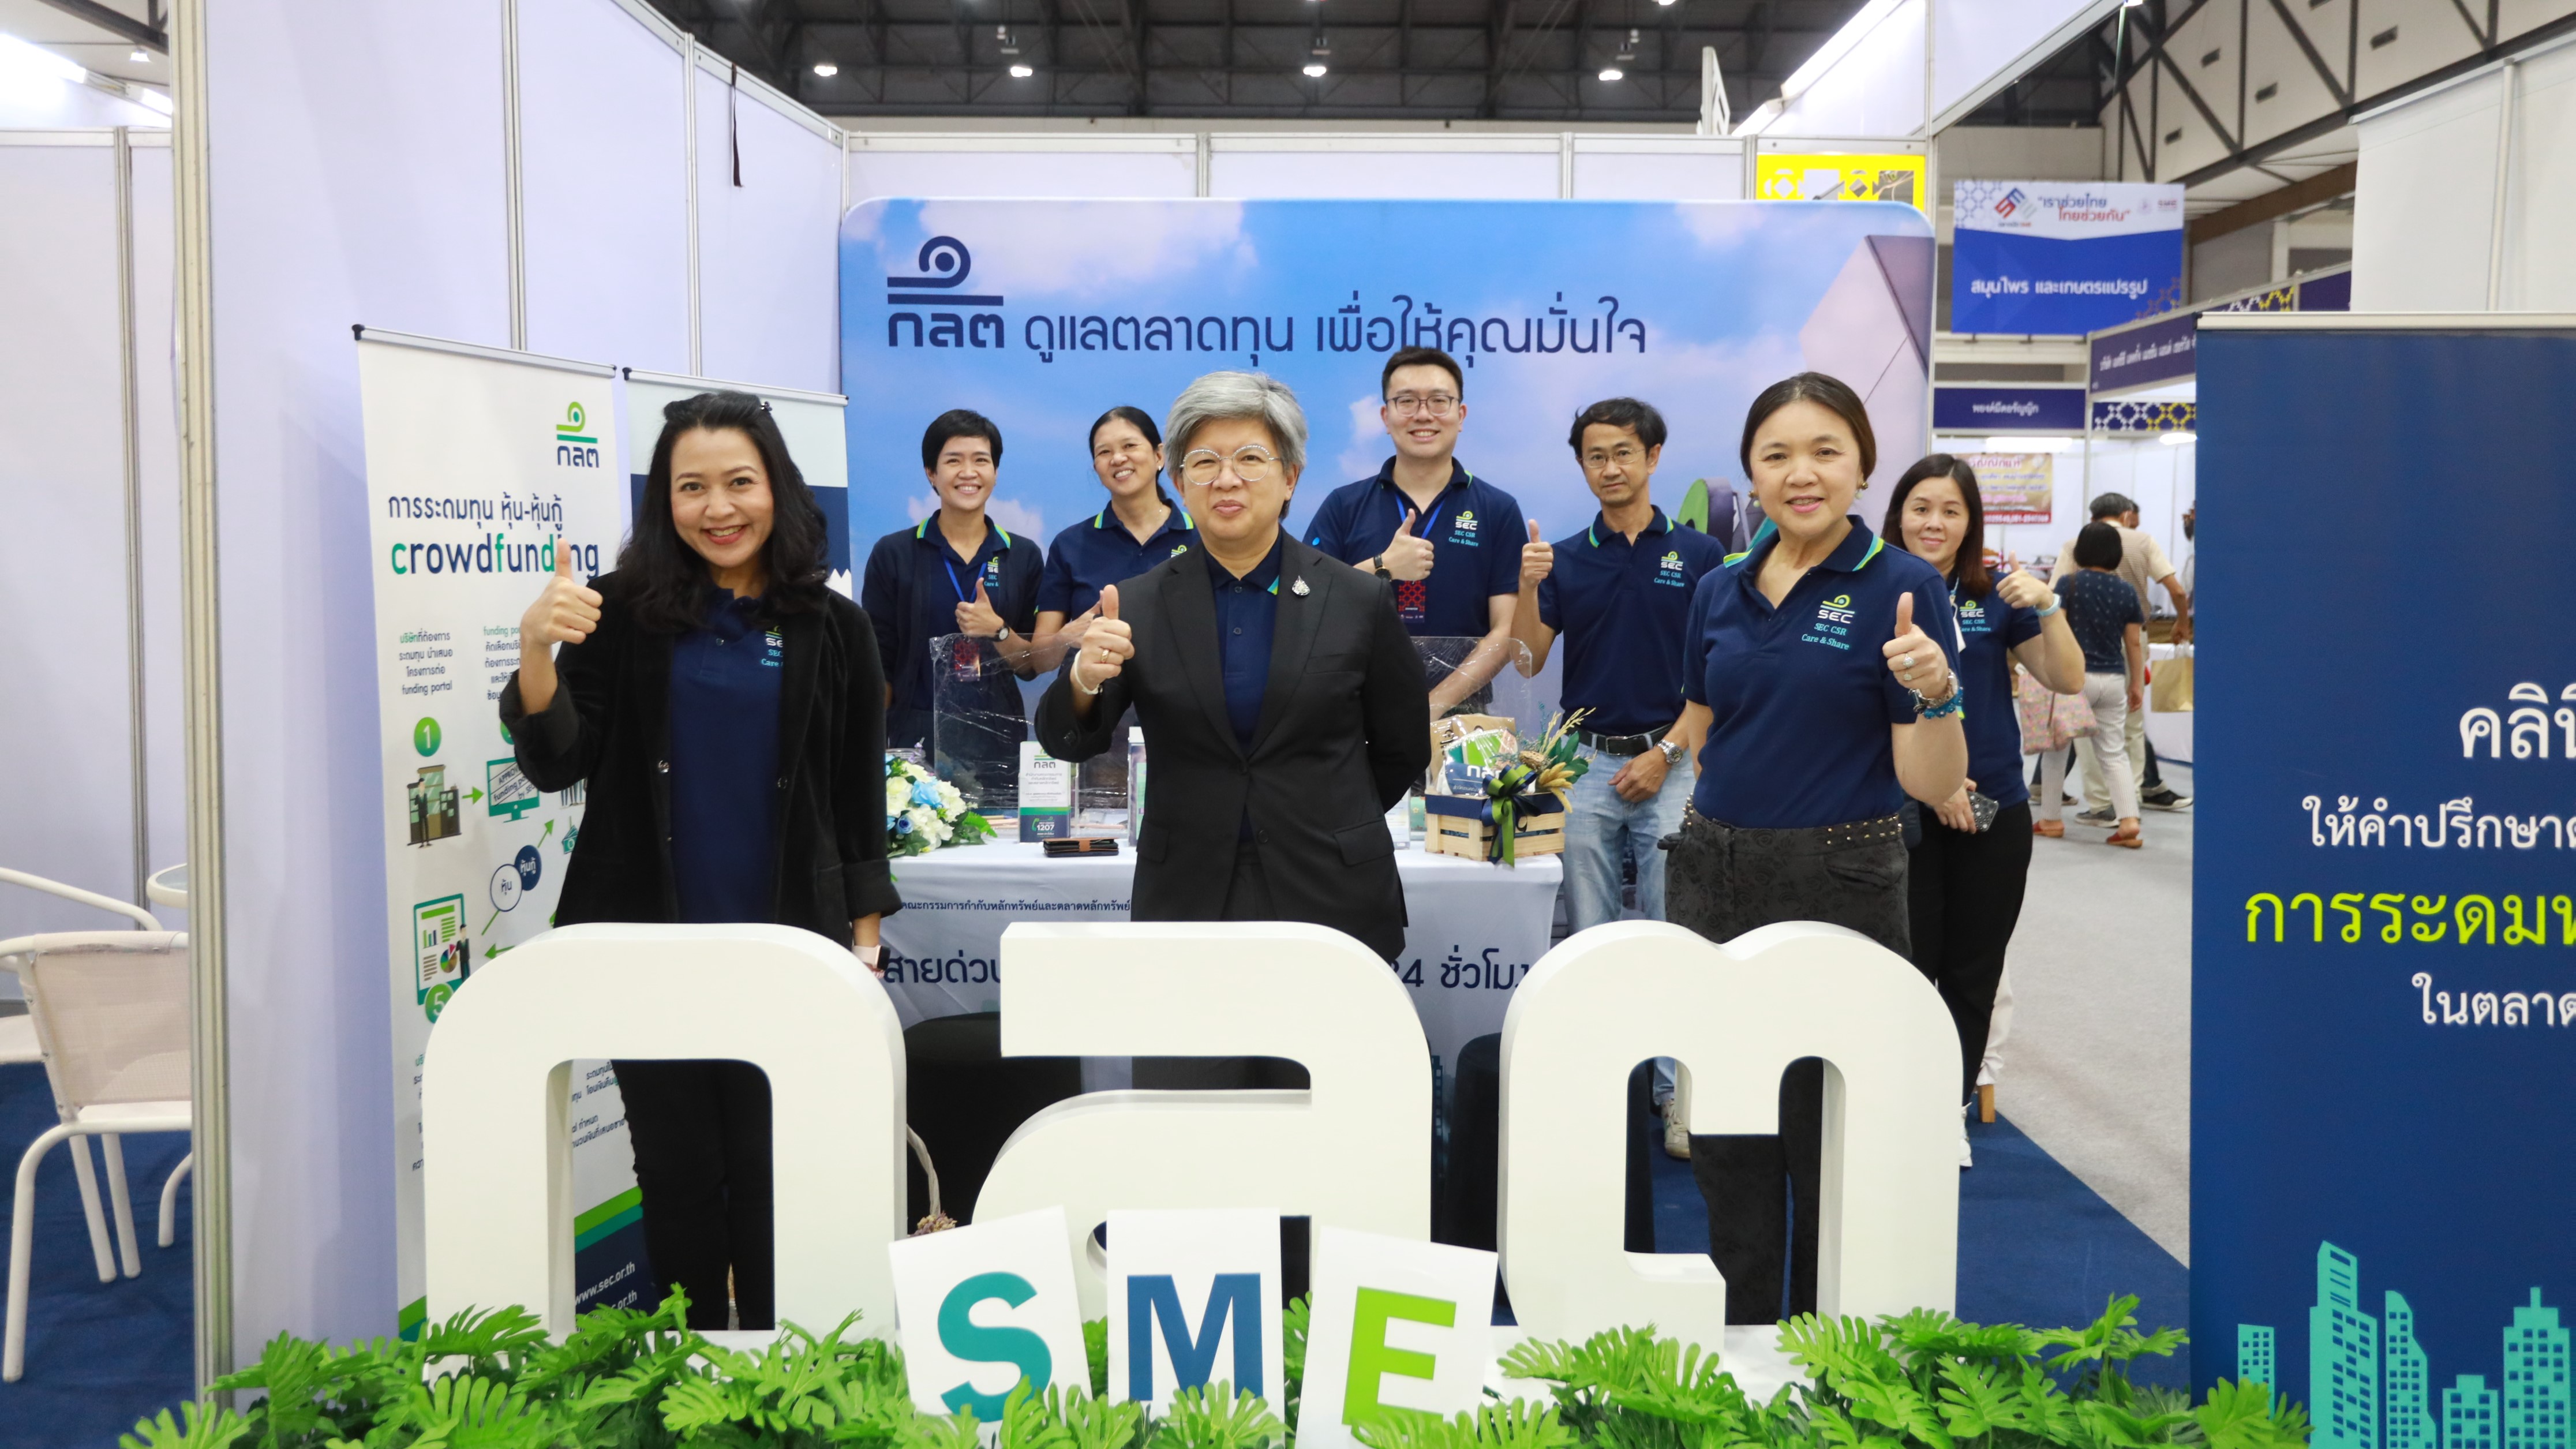 ก.ล.ต. เผยได้รับการตอบรับที่ดีจากการร่วมออกบูธในงานตลาดนัด SME เราช่วยไทย ไทยช่วยกัน